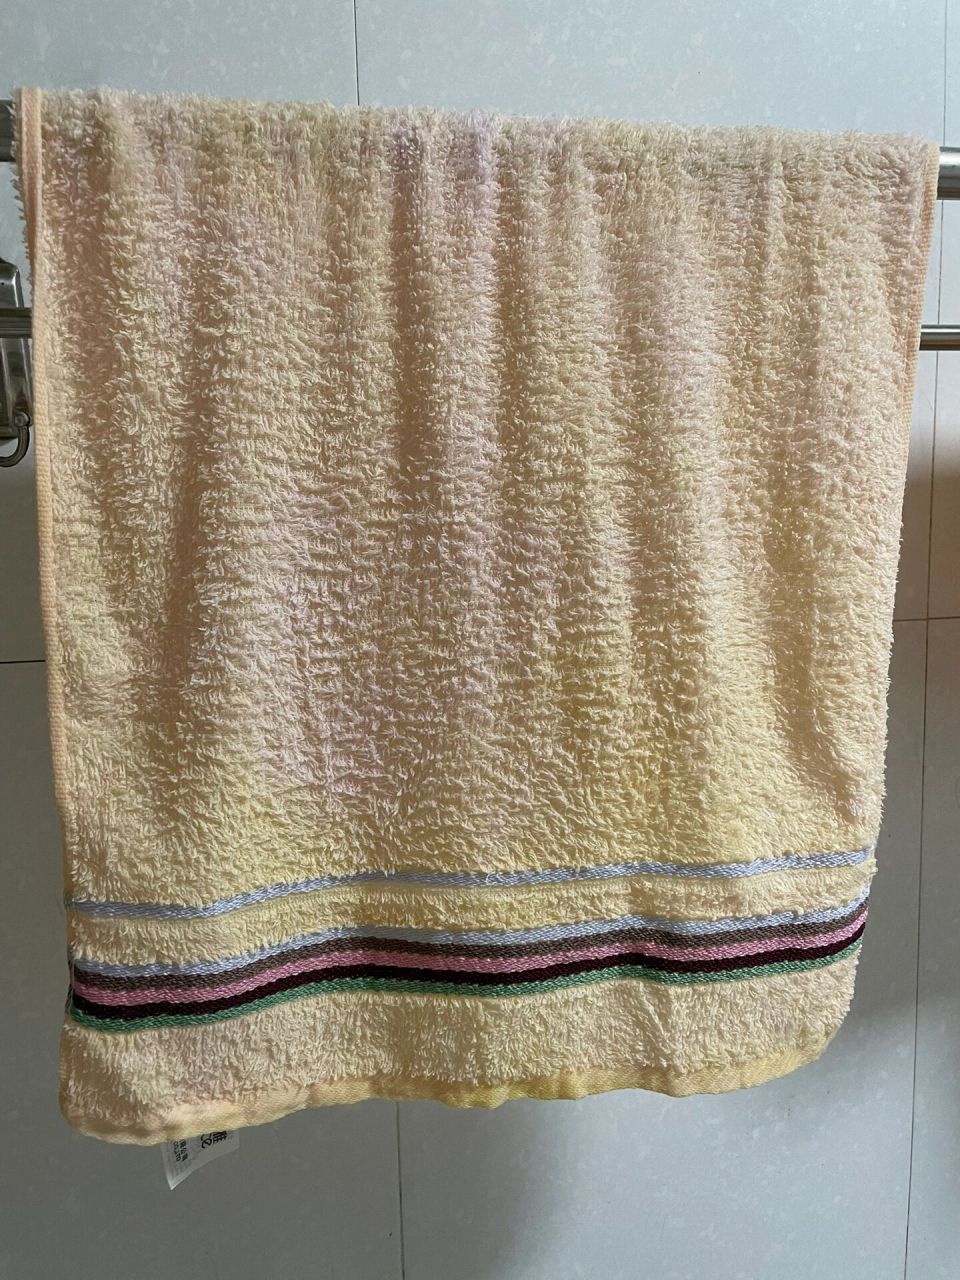 这两三个月,家里的毛巾用几天就变黄,换了新的还是这样,像被染色一样